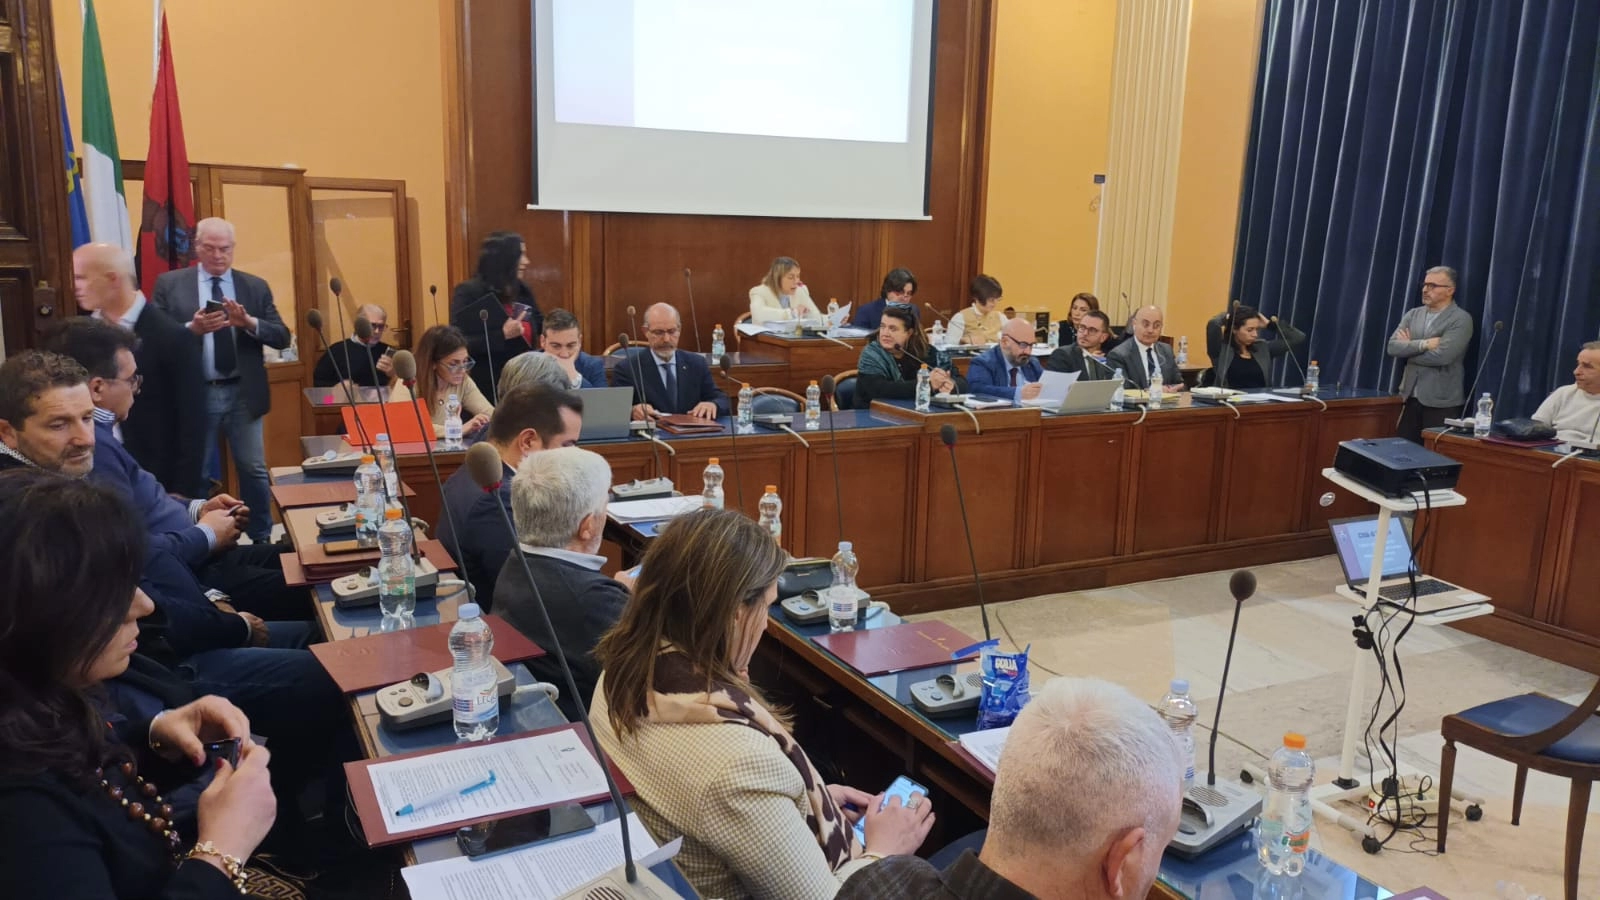 Foggia: ennesima seduta del Consiglio comunale senza atti deliberativi